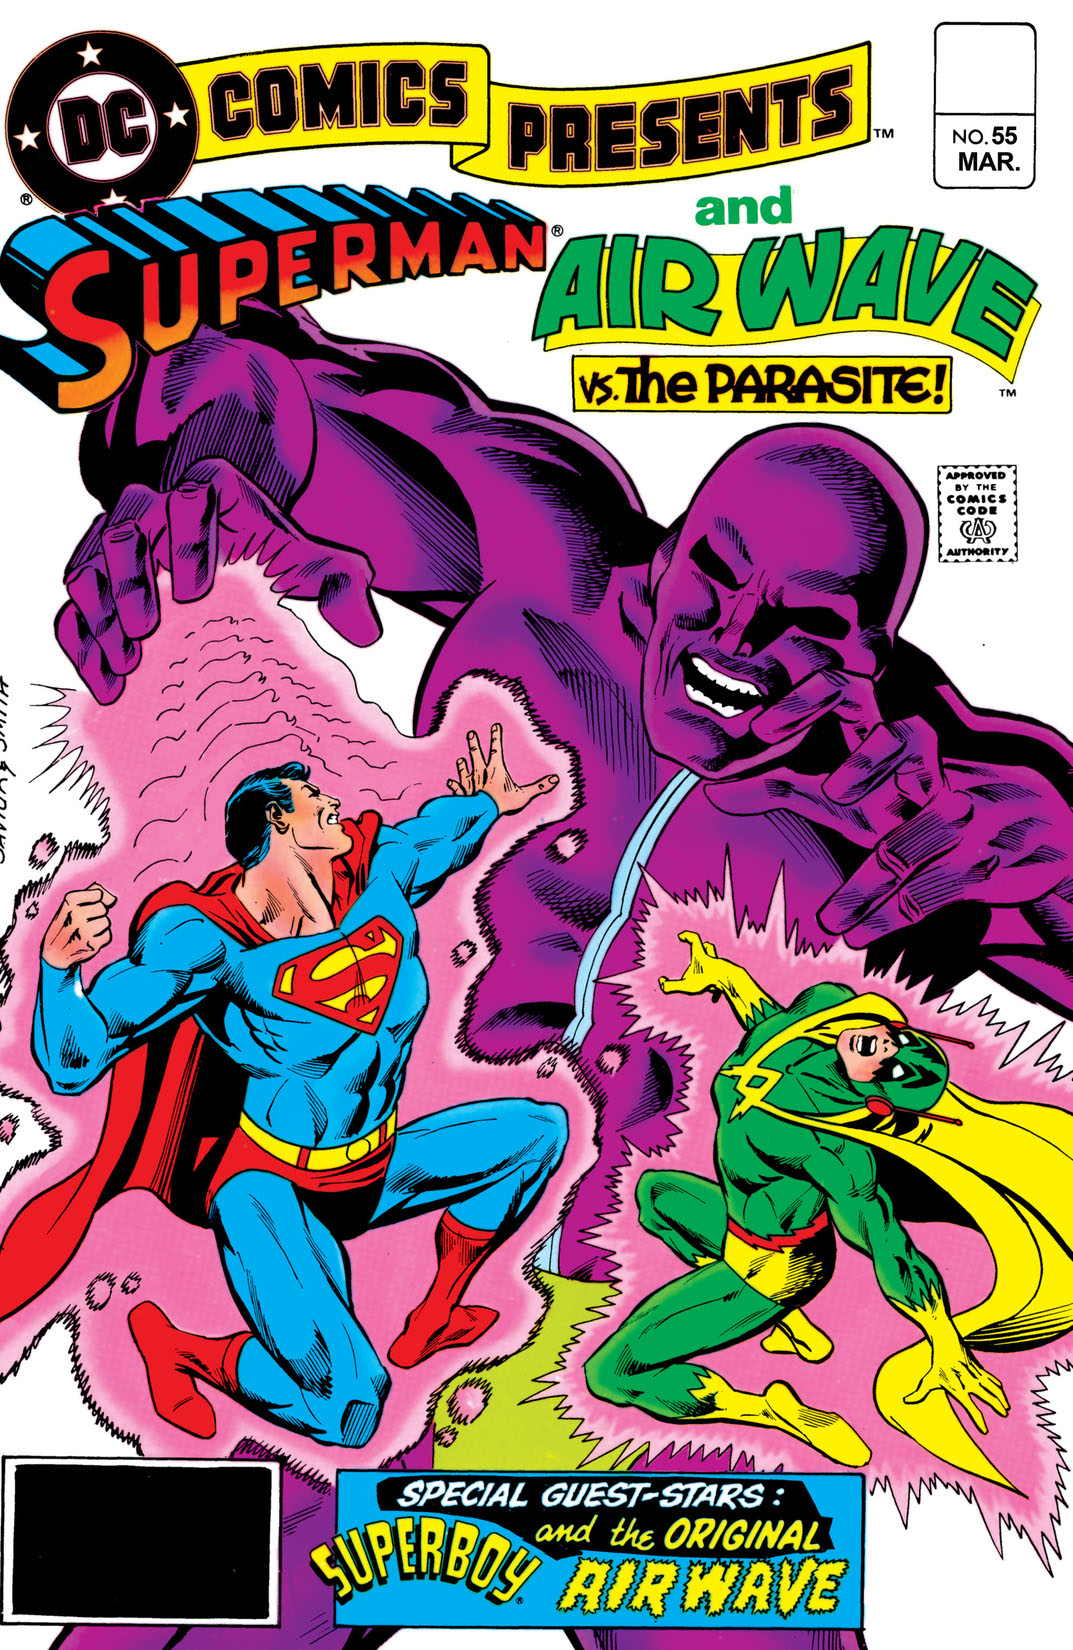 DC Comics Presents (1978-1986) #55 preview images